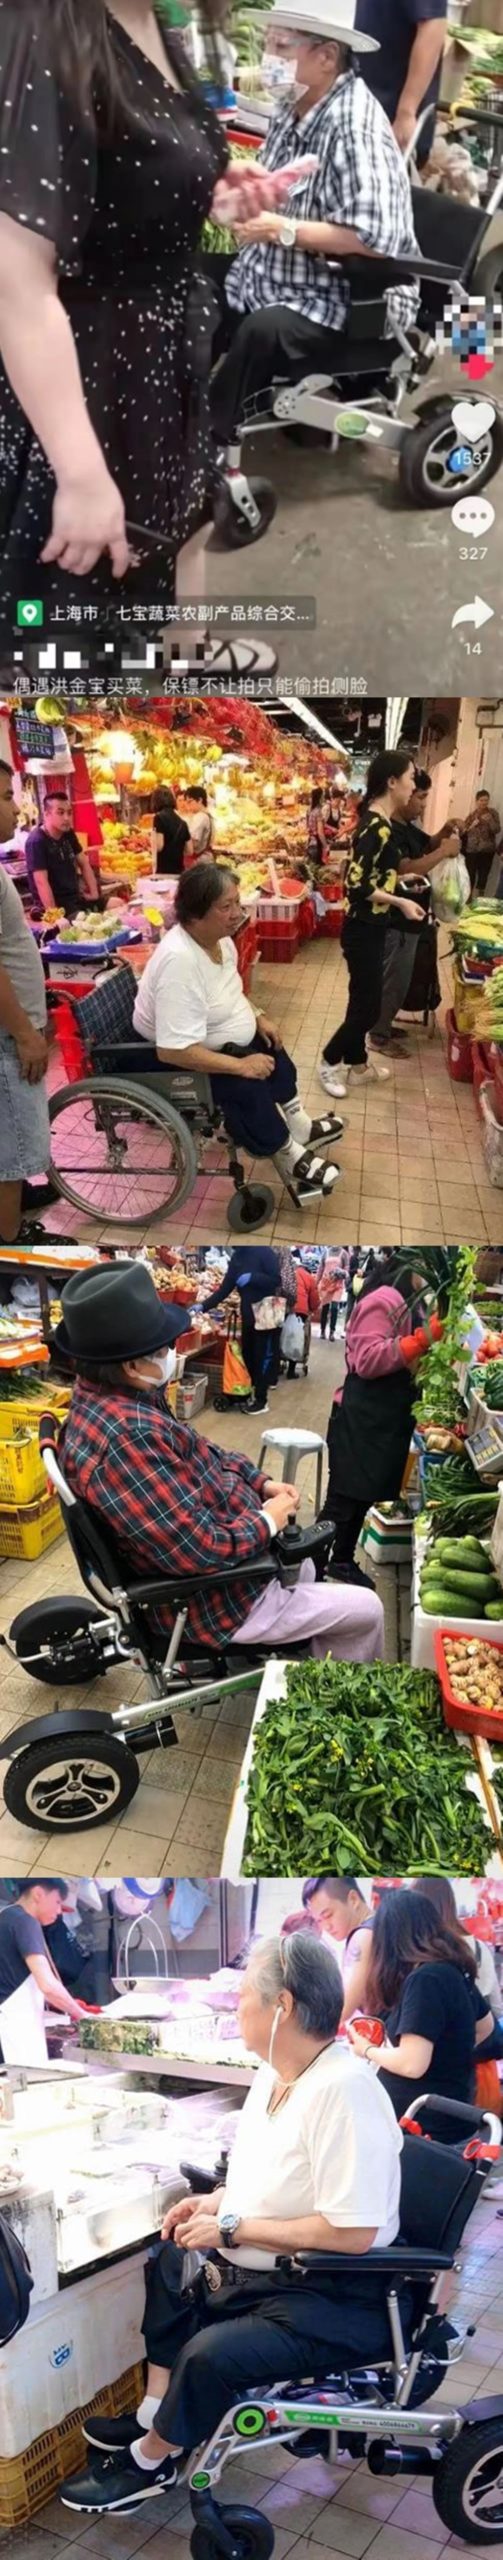 洪金寶過去就曾被拍到坐輪椅逛菜市場